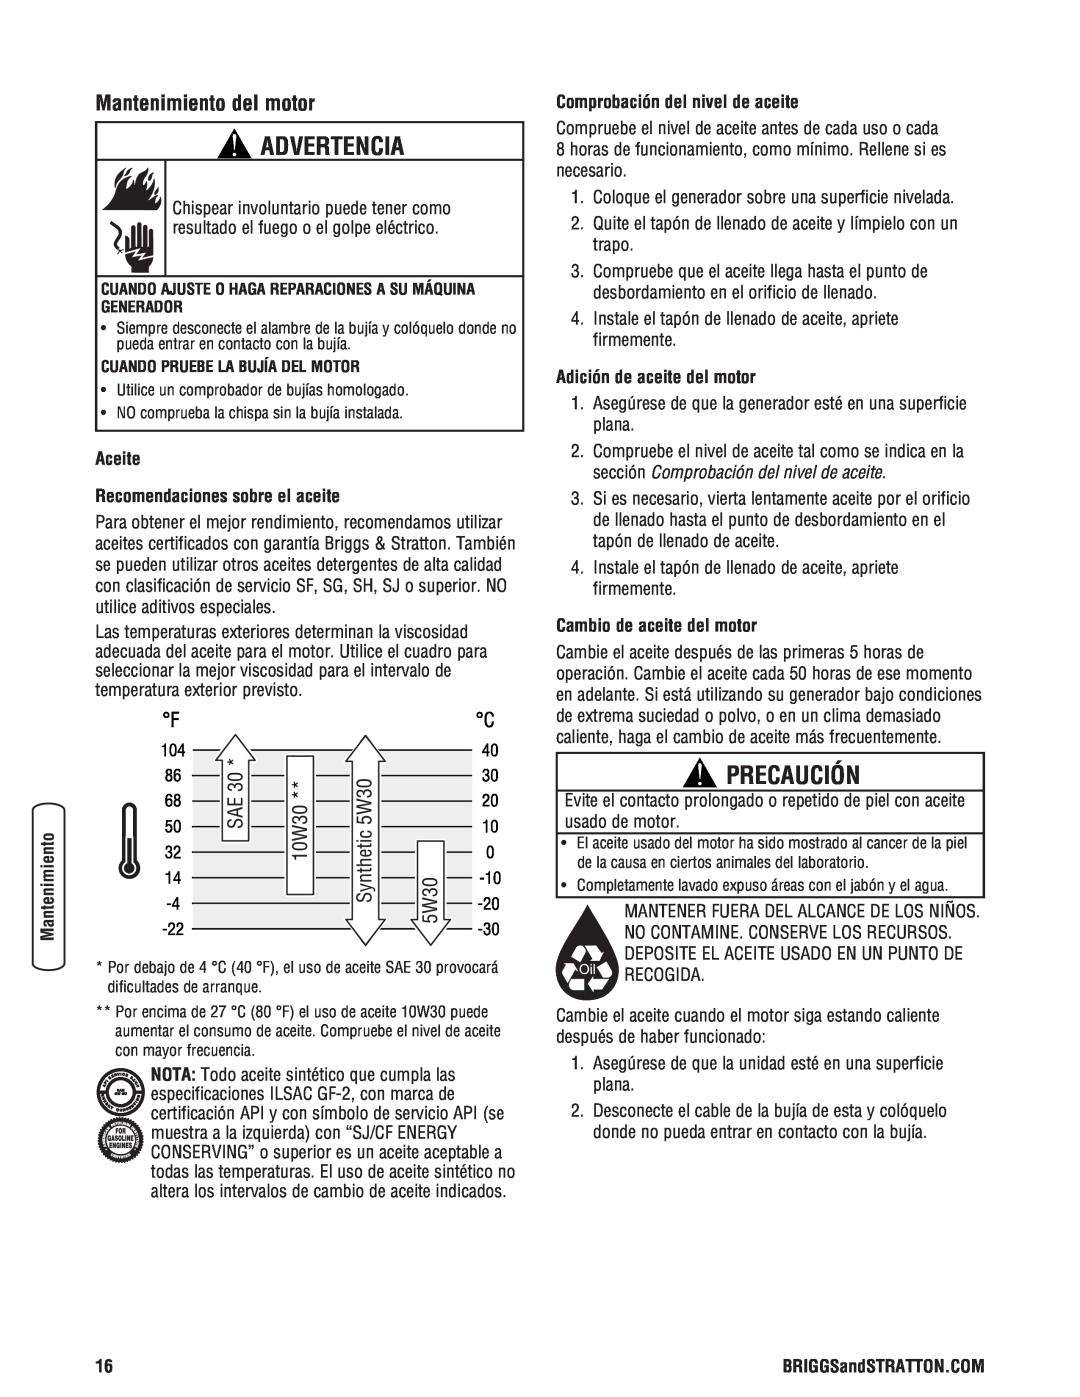 Briggs & Stratton Portable Generator manual Advertencia, Precaución, Aceite Recomendaciones sobre el aceite 